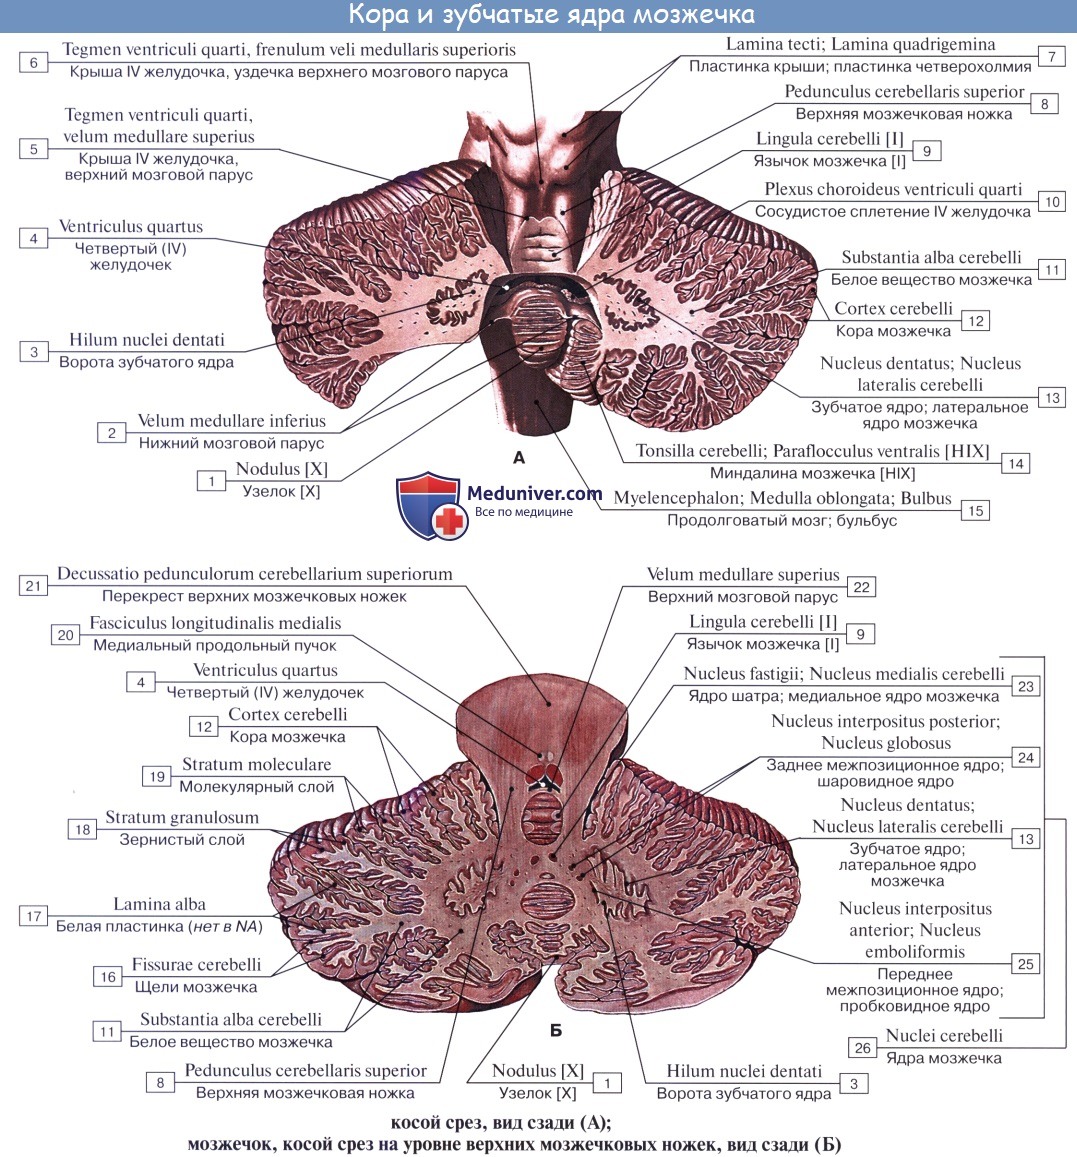 anatomia mozgechka 5a